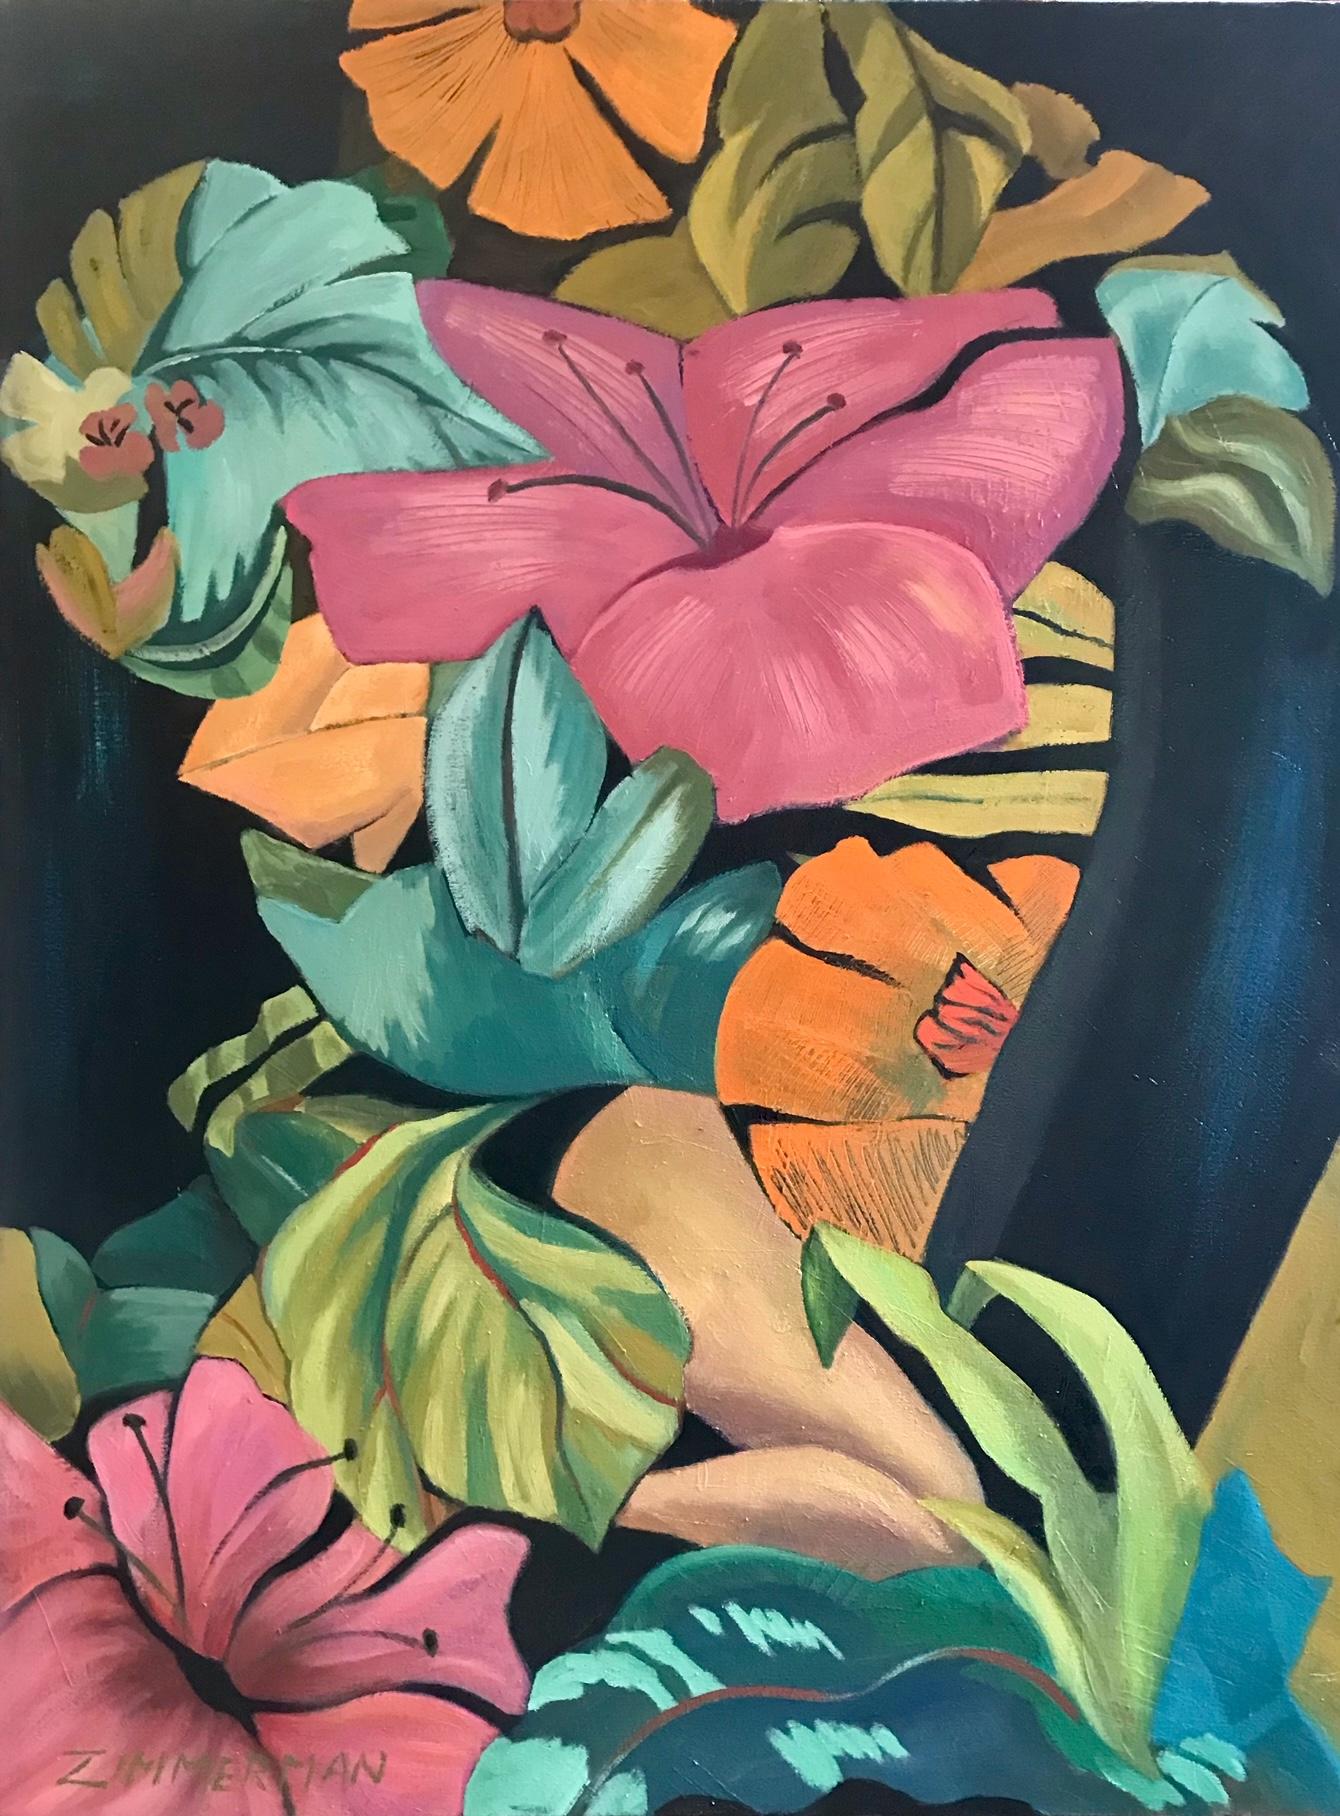 Tropische Pflanzen und Blumen sind zusammen mit teilweise versteckten Figuren in dieser tropischen Szene versammelt.

Ein Hawaii-Wandteppich – Ölfarbe von Marc Zimmerman

Dieses Meisterwerk ist in der Zimmerman Gallery, Carmel CA,